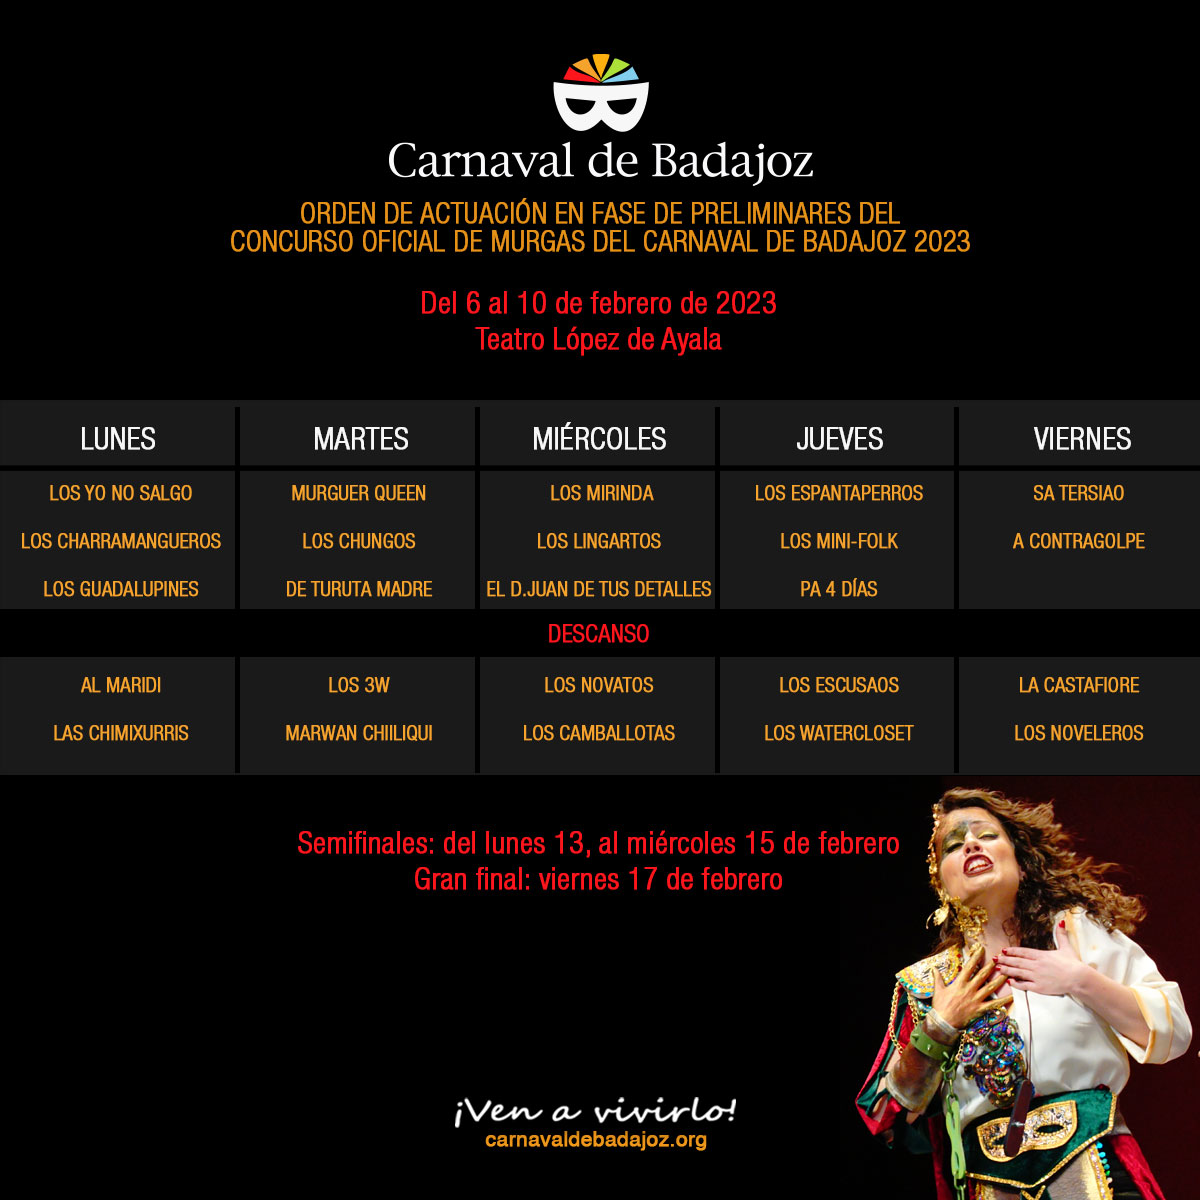 Orden del Concurso Oficial de Murgas del Carnaval de Badajoz 2023